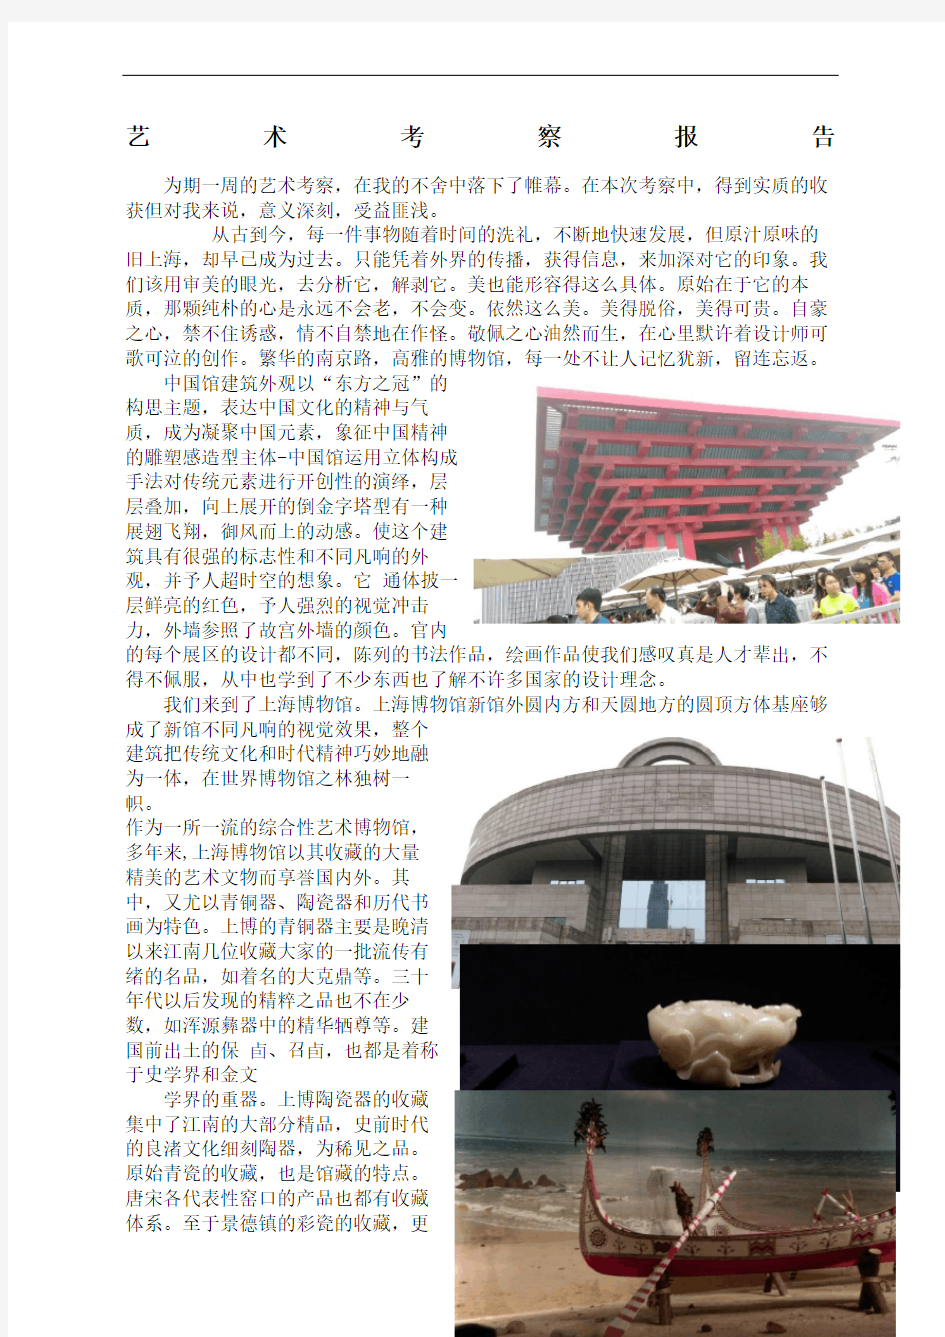 上海艺术考察报告完整版